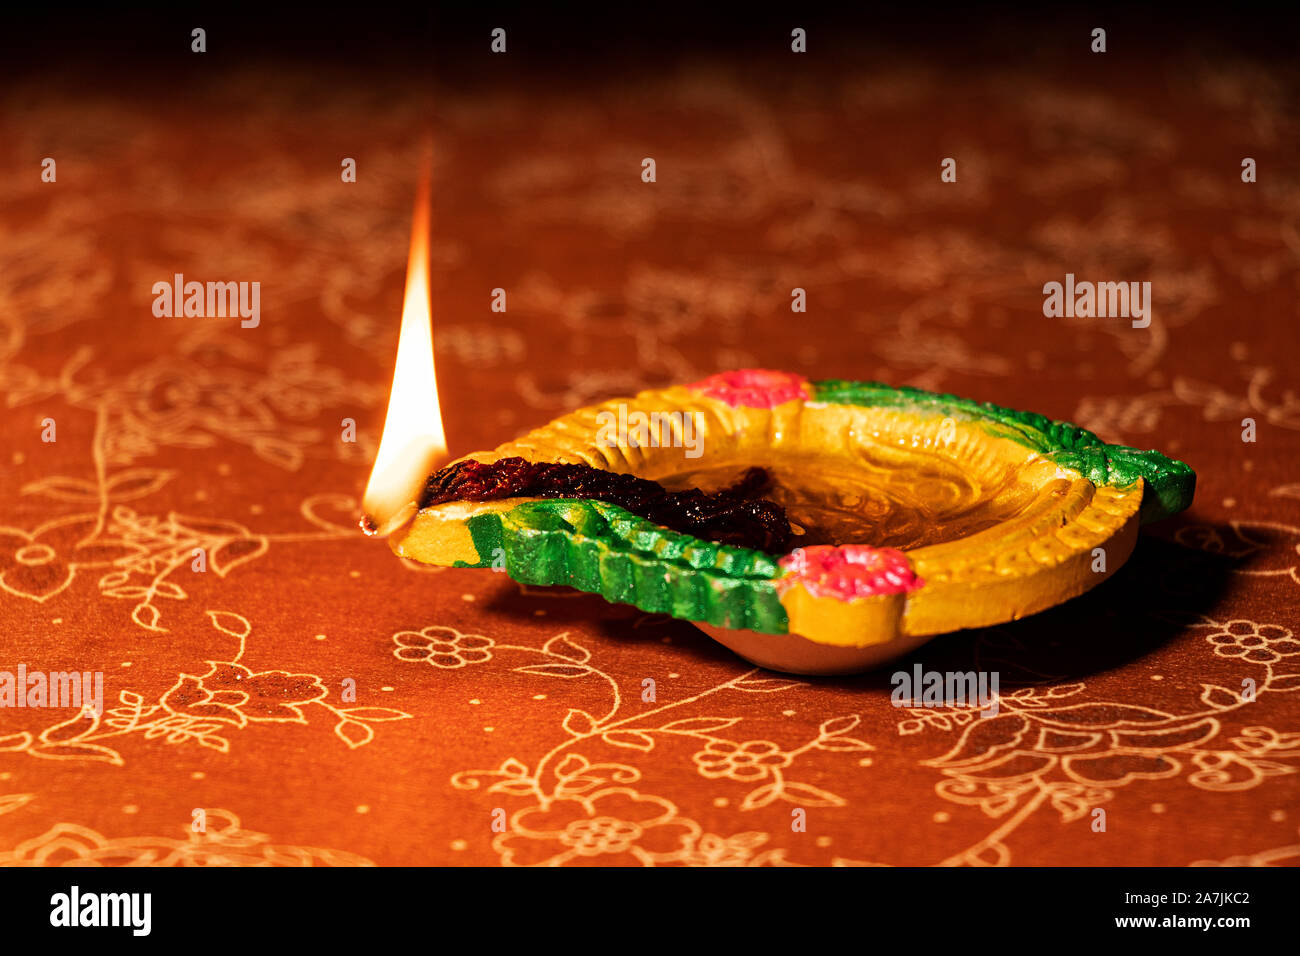 Nessuno Shot di creta che brucia illuminazione diya illuminata sul Diwali Festival celebrazione Foto Stock